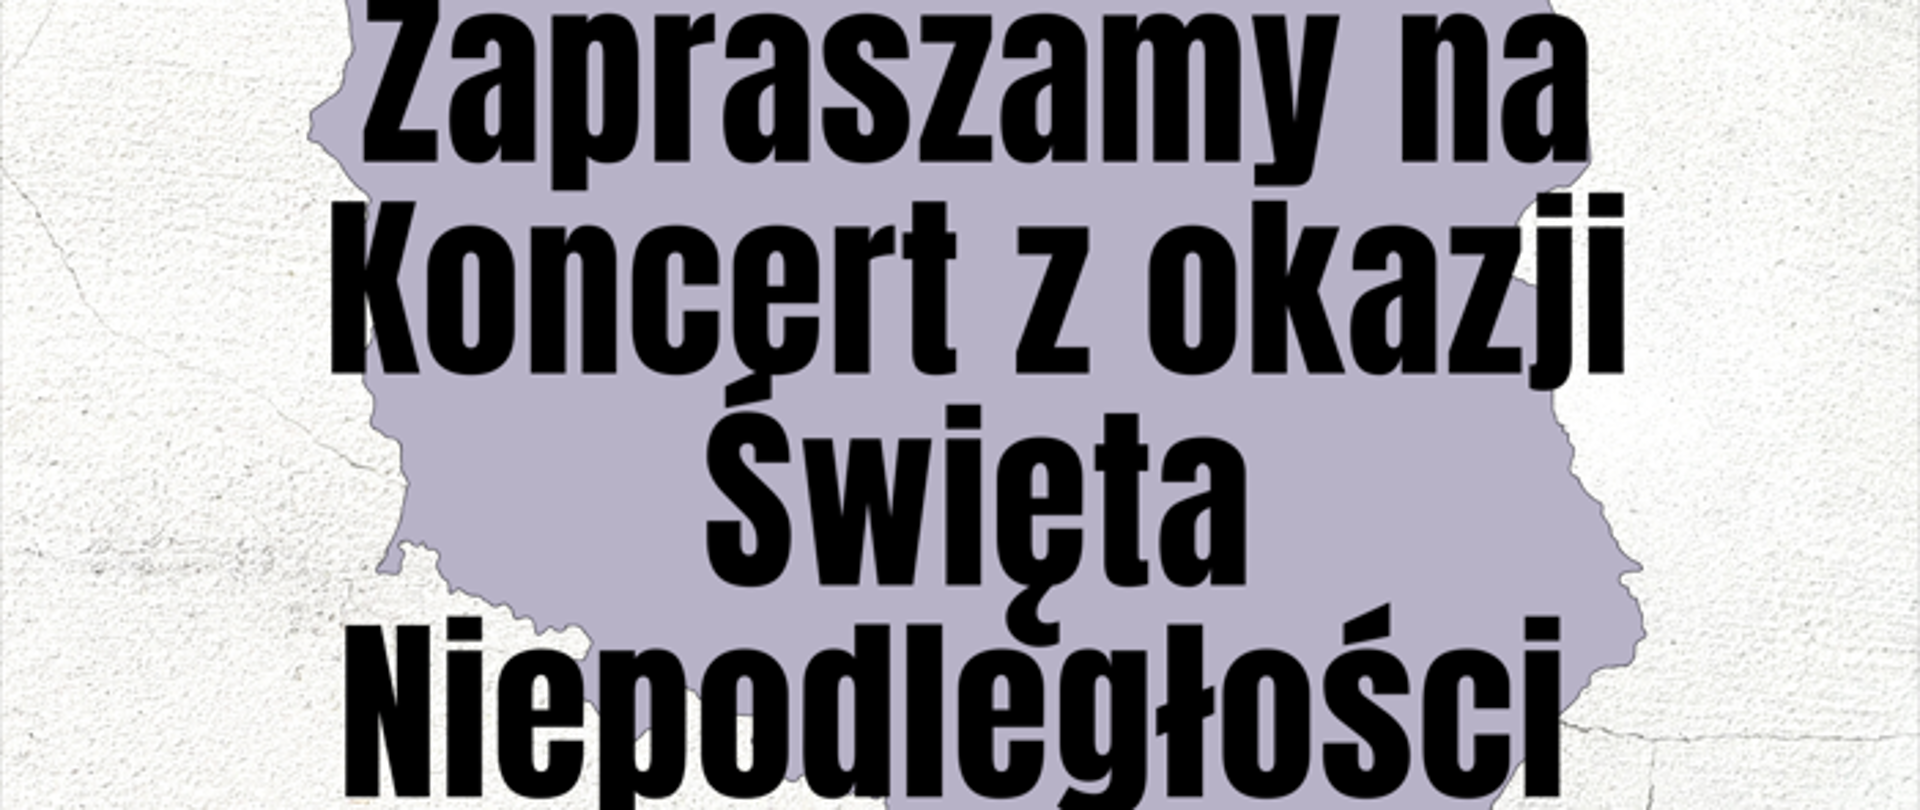 Plakat koncertu z okazji Święta Niepodległości, flaga polski, czarny napis w tle kontur mapy polski